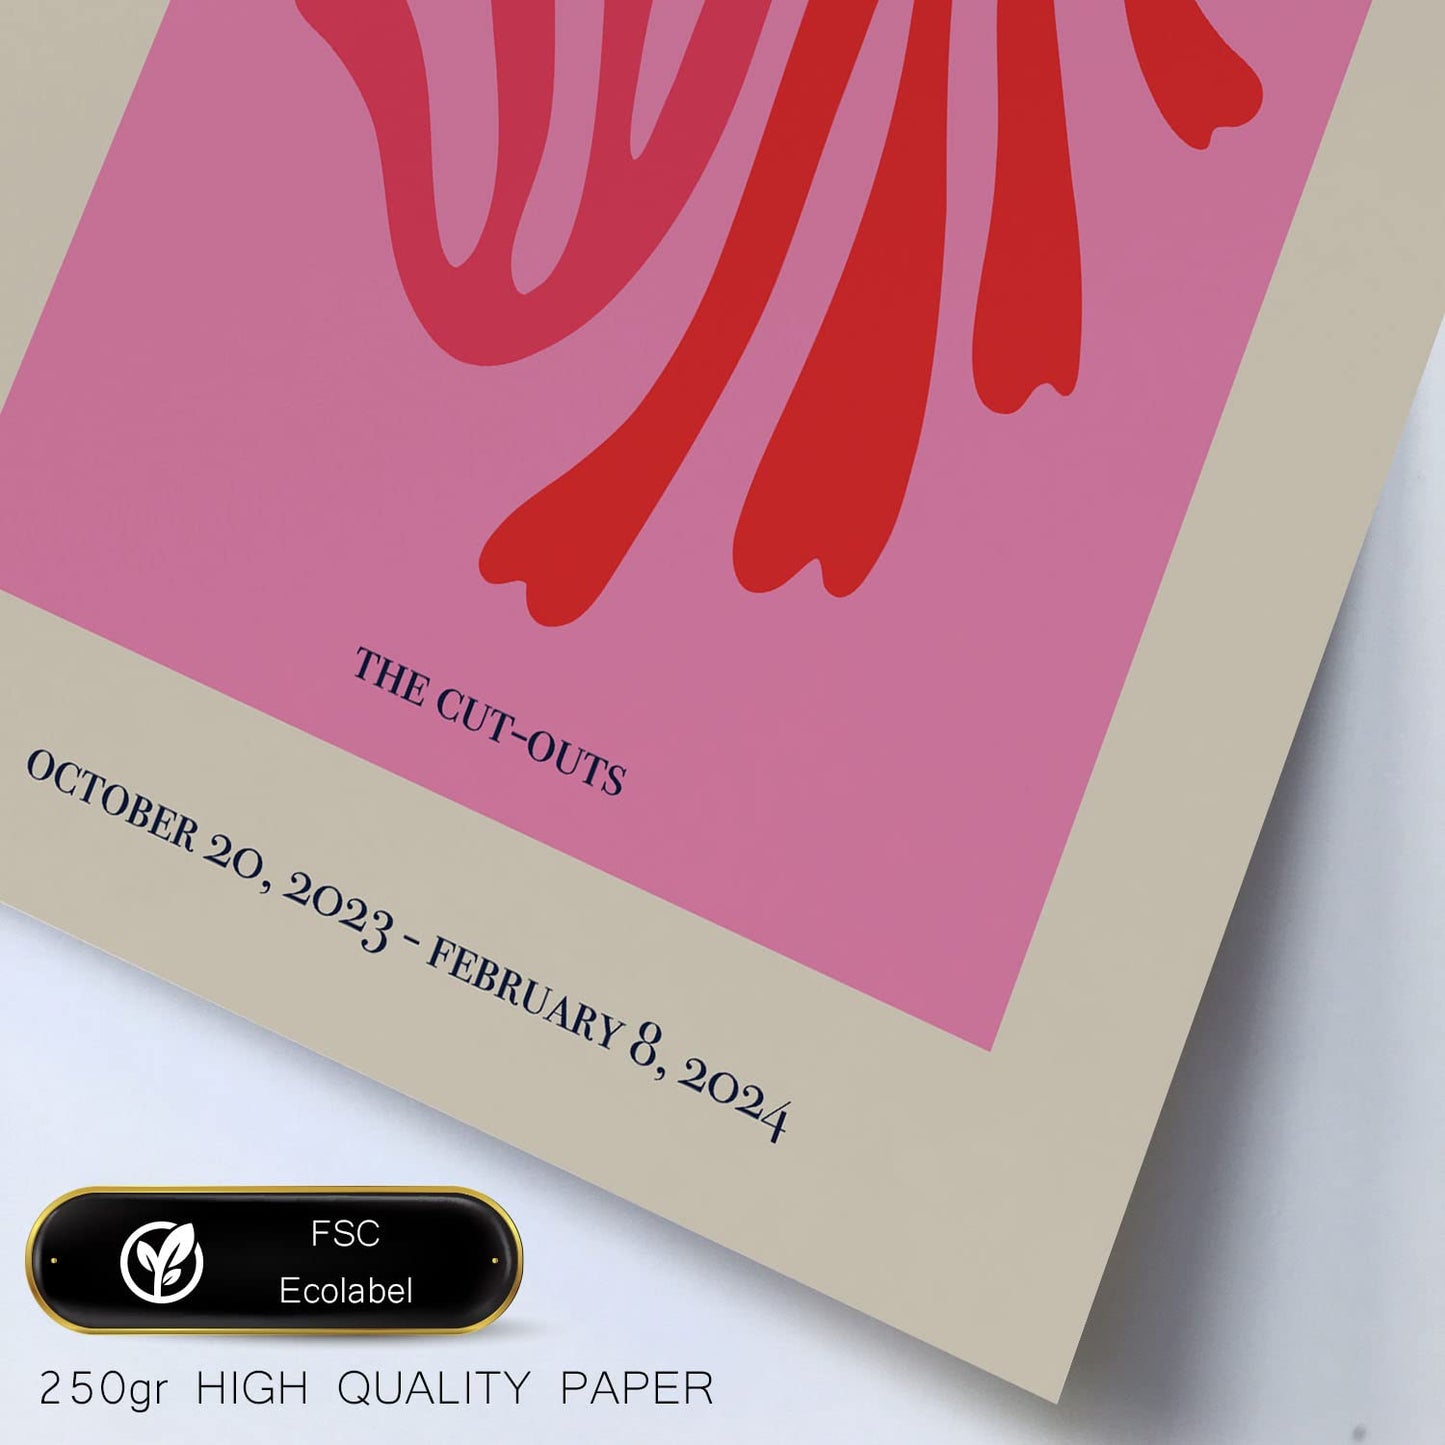 Set de 6 posters Matisse. Colección de láminas con estética collage para la Tamaños A3 y A4. .-Artwork-Nacnic-Nacnic Estudio SL